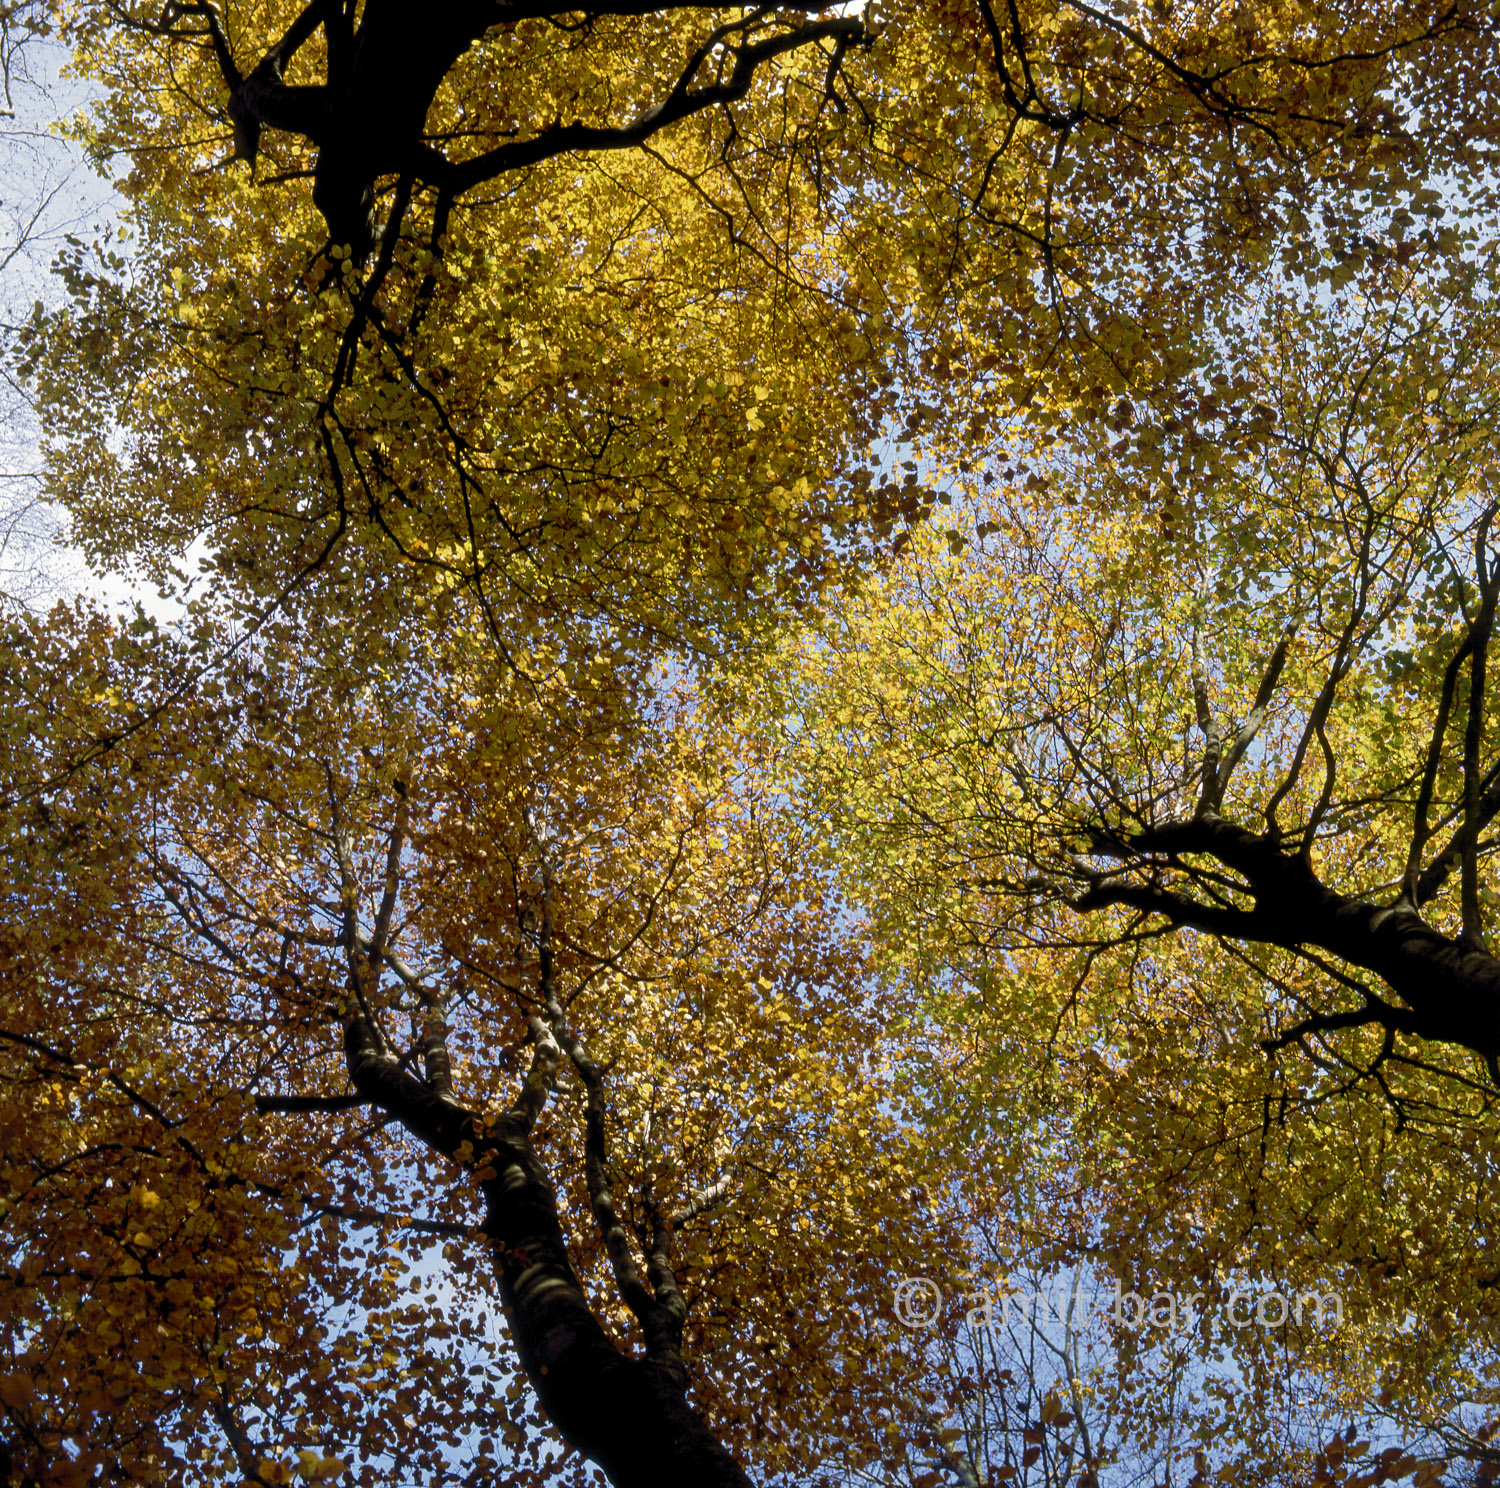 Autumn tree tops: Tree tops of oaks in the autumn